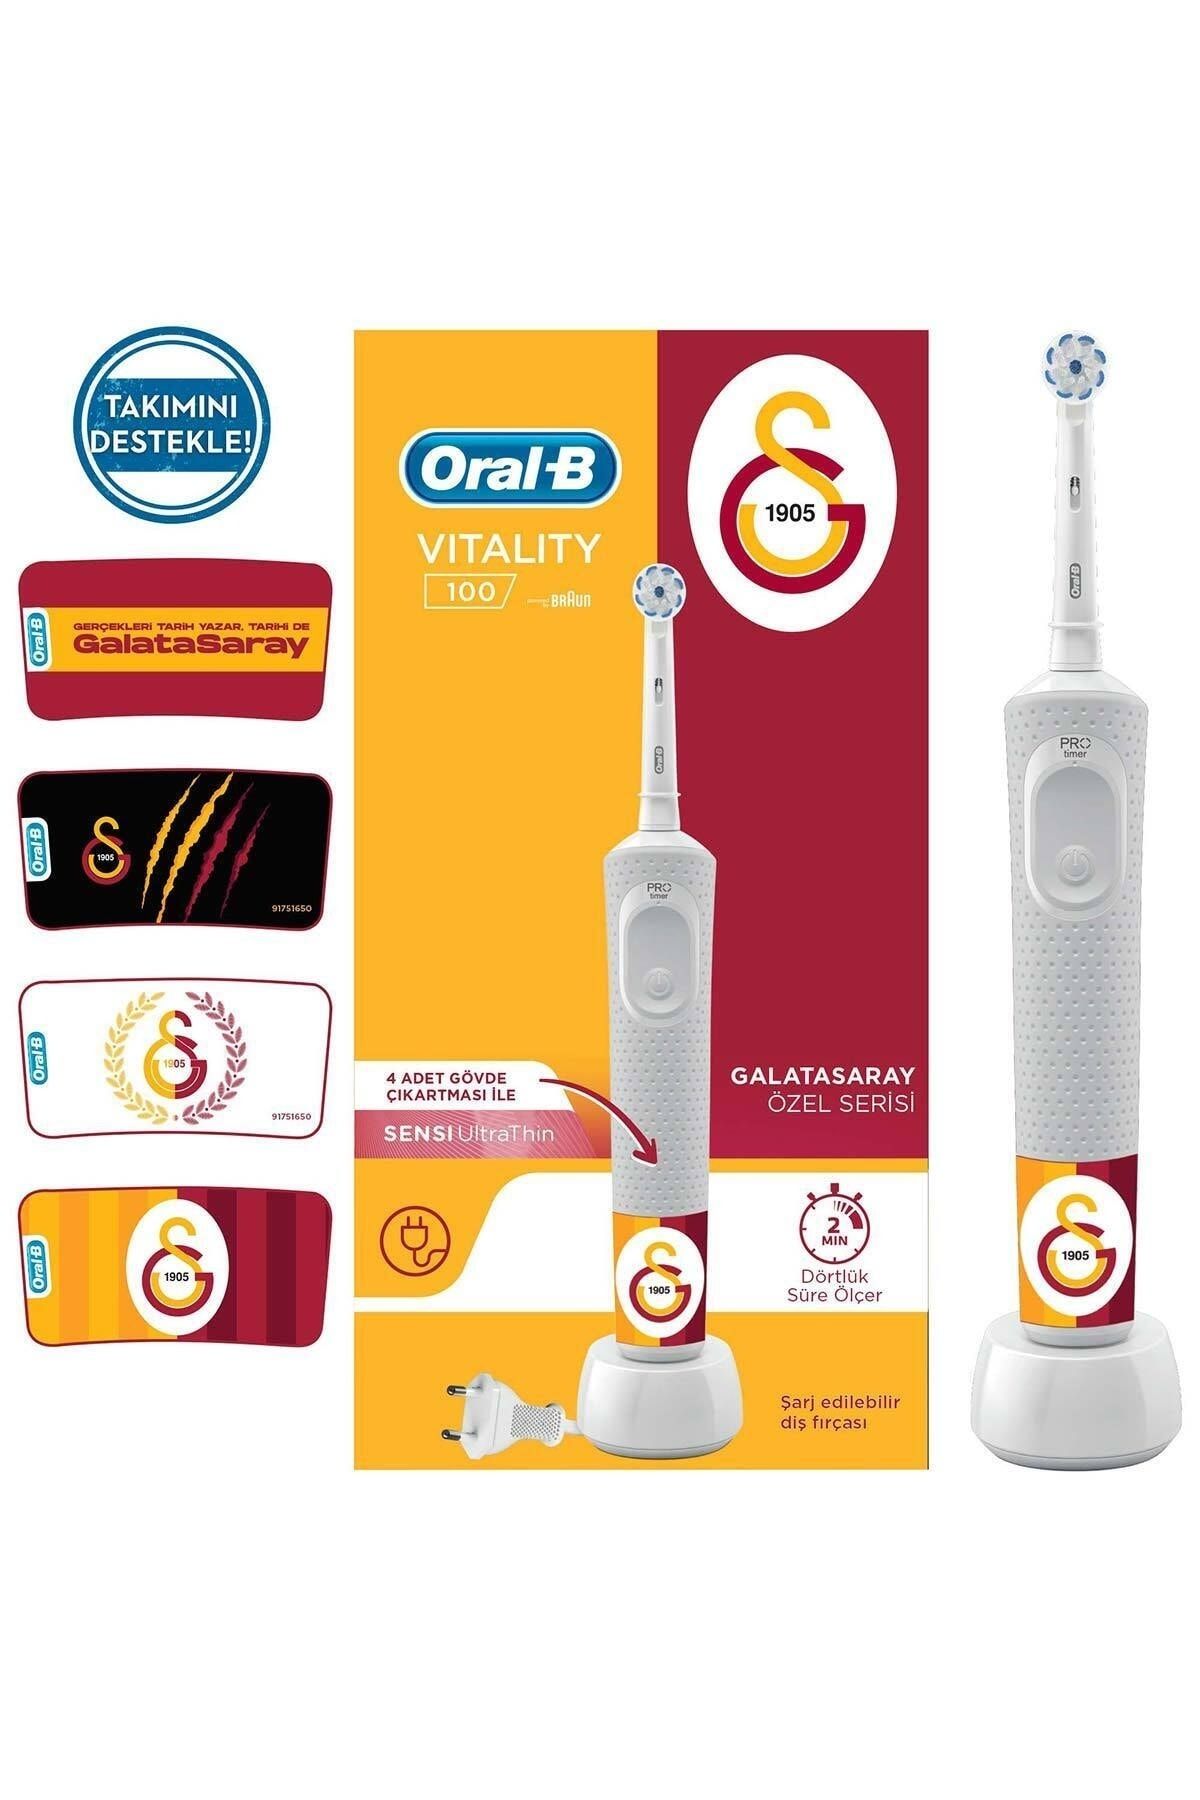 Oral-B D100 Vitality Şarj Edilebilir Diş Fırçası Galatasaray